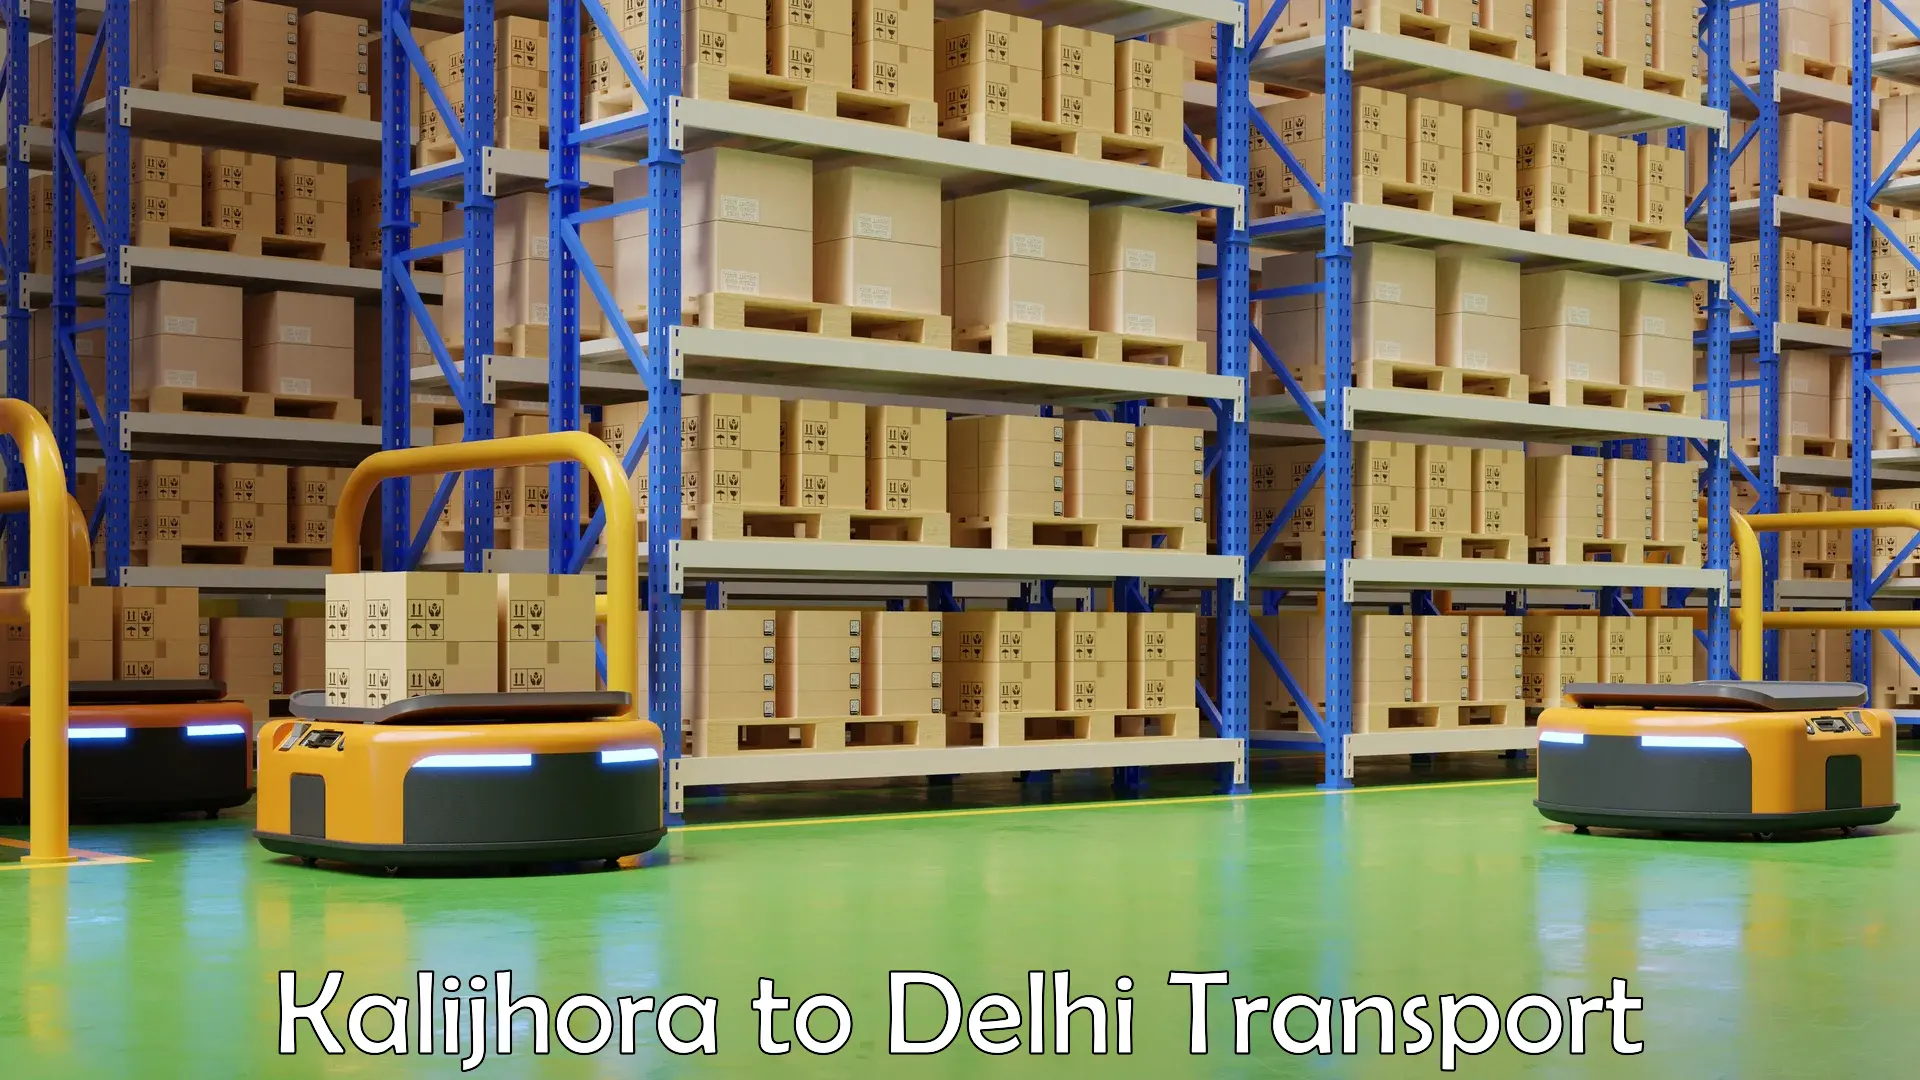 Daily parcel service transport Kalijhora to NIT Delhi